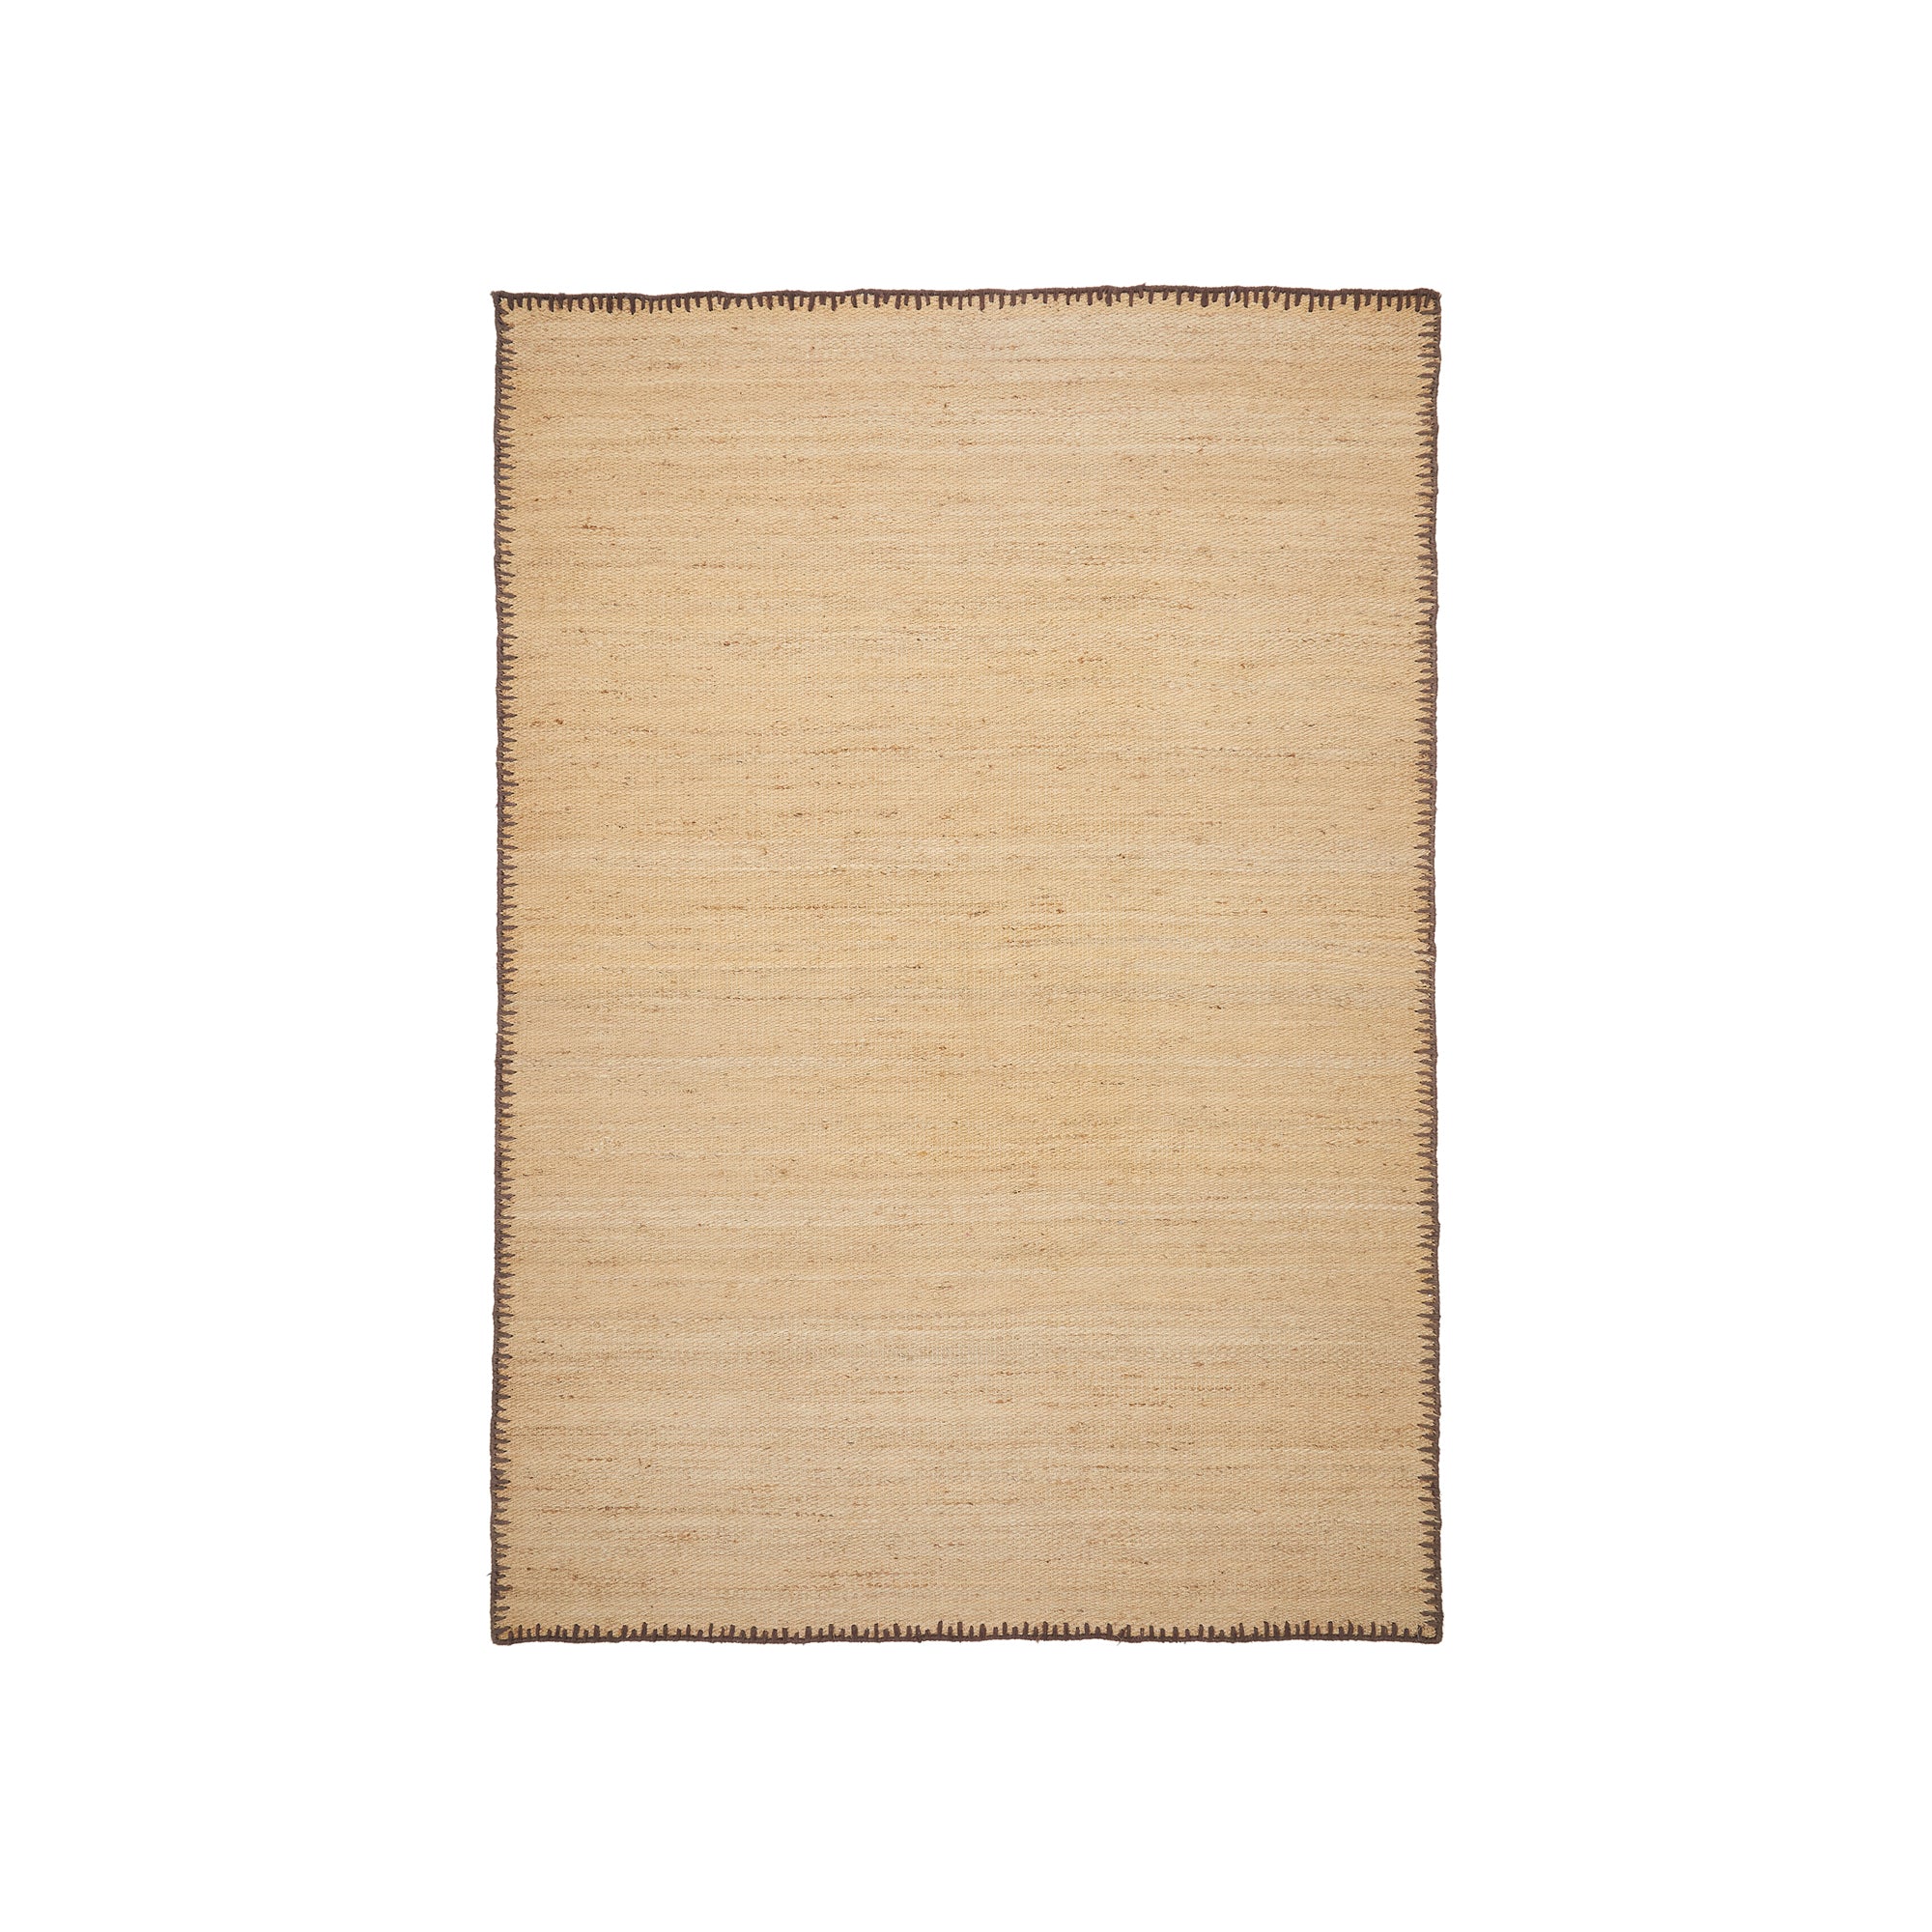 Sorina natural jute carpet with brown border 160 x 230 cm